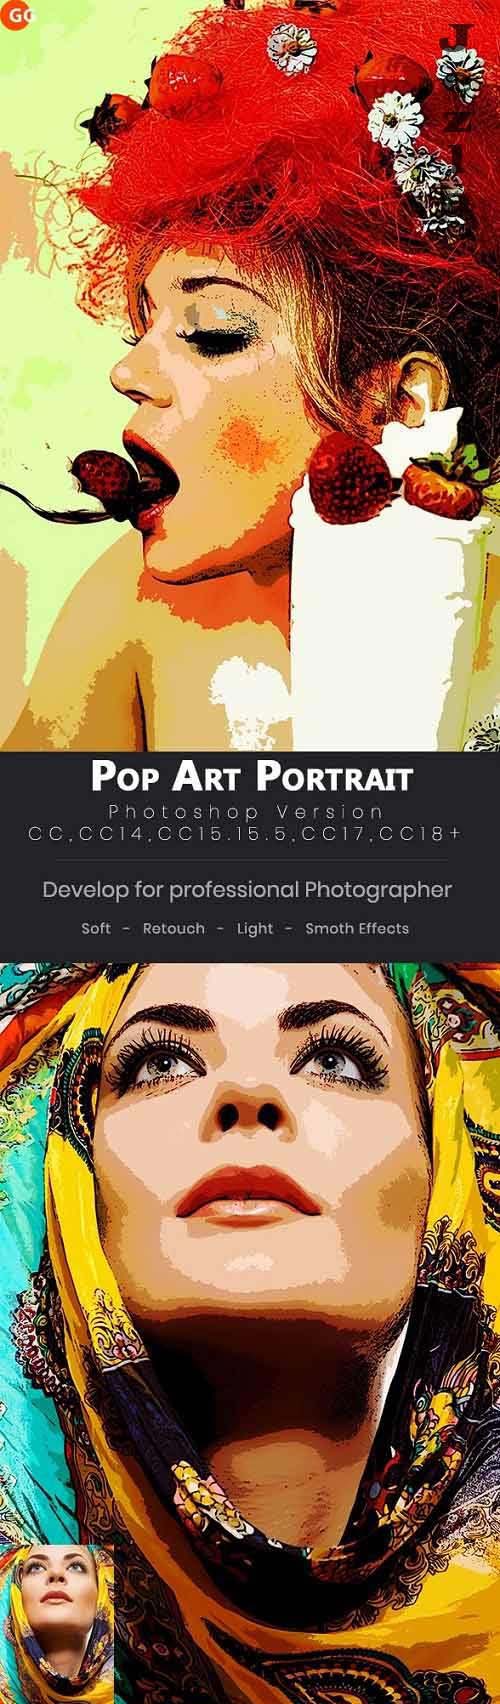 10 Pop Art Portraits Photoshop Action - 22042646